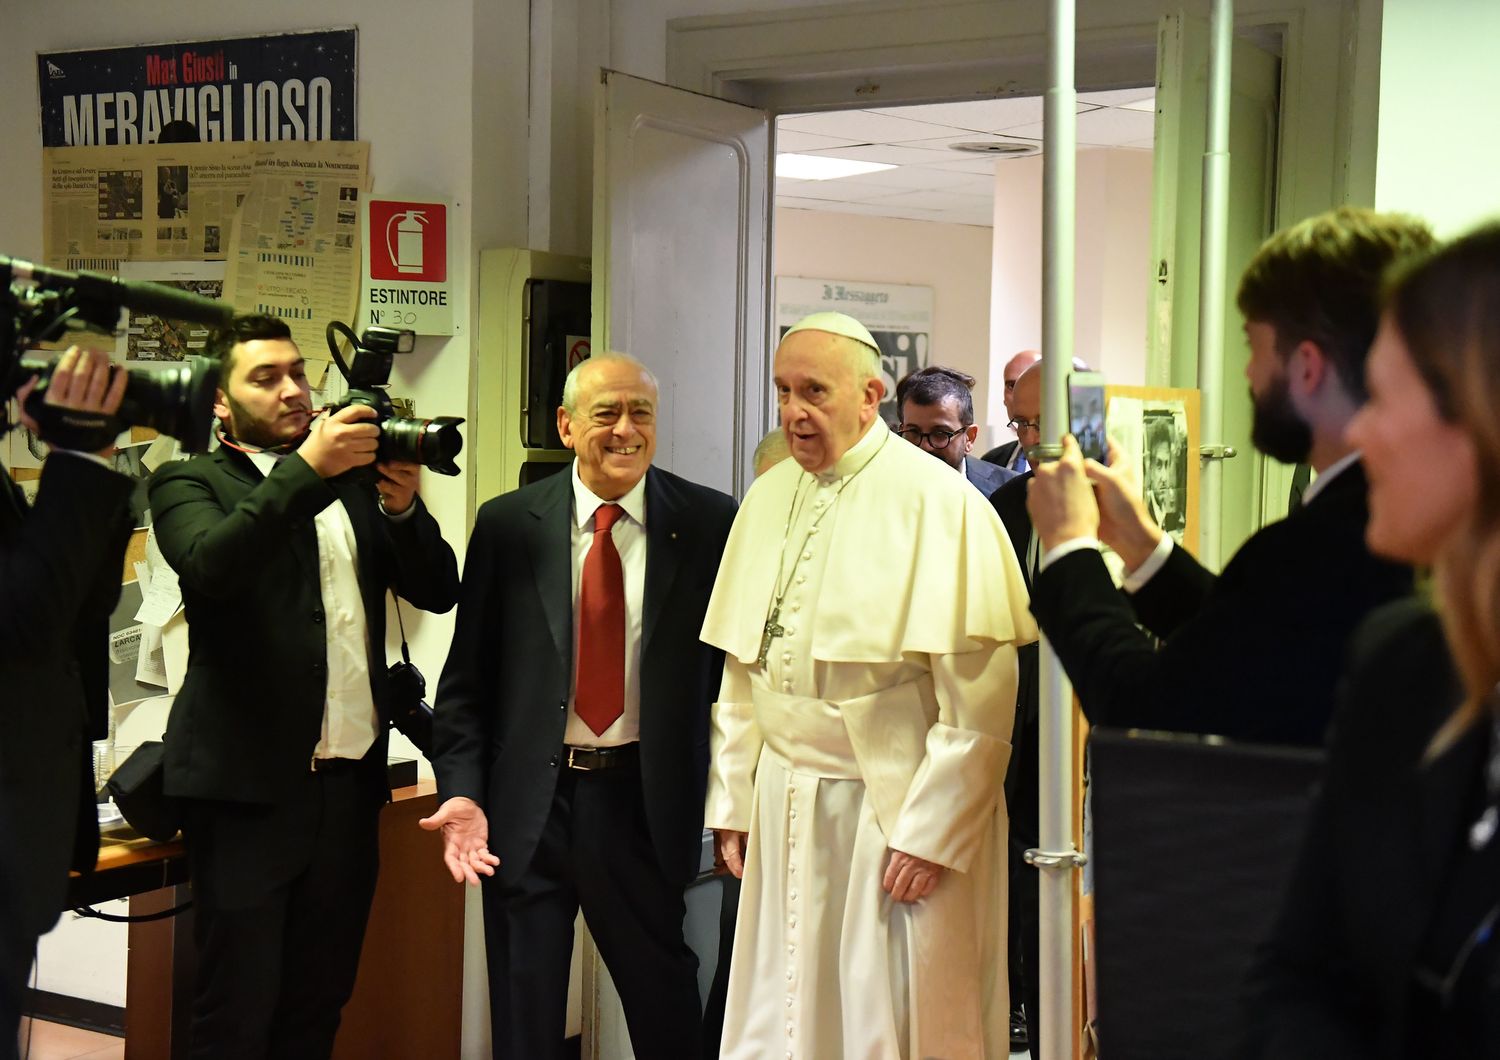 Il Papa in visita al Messaggero: &ldquo;I giornalisti devono attenersi ai fatti&rdquo;